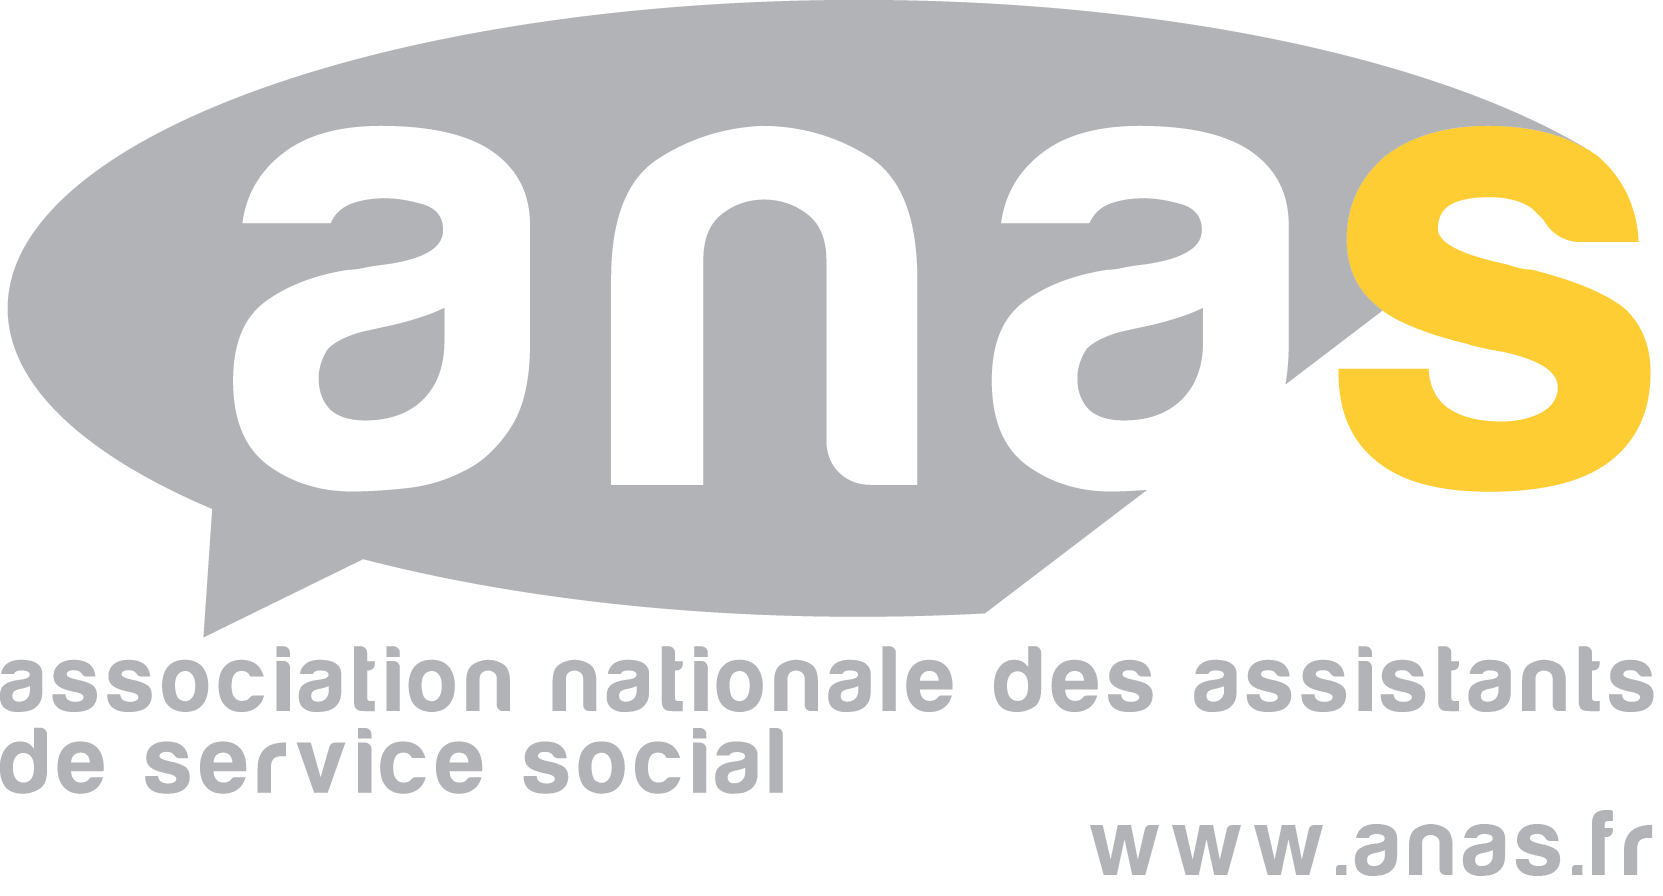 Internet En Prison - Anas (association nationale des assistants de service social)